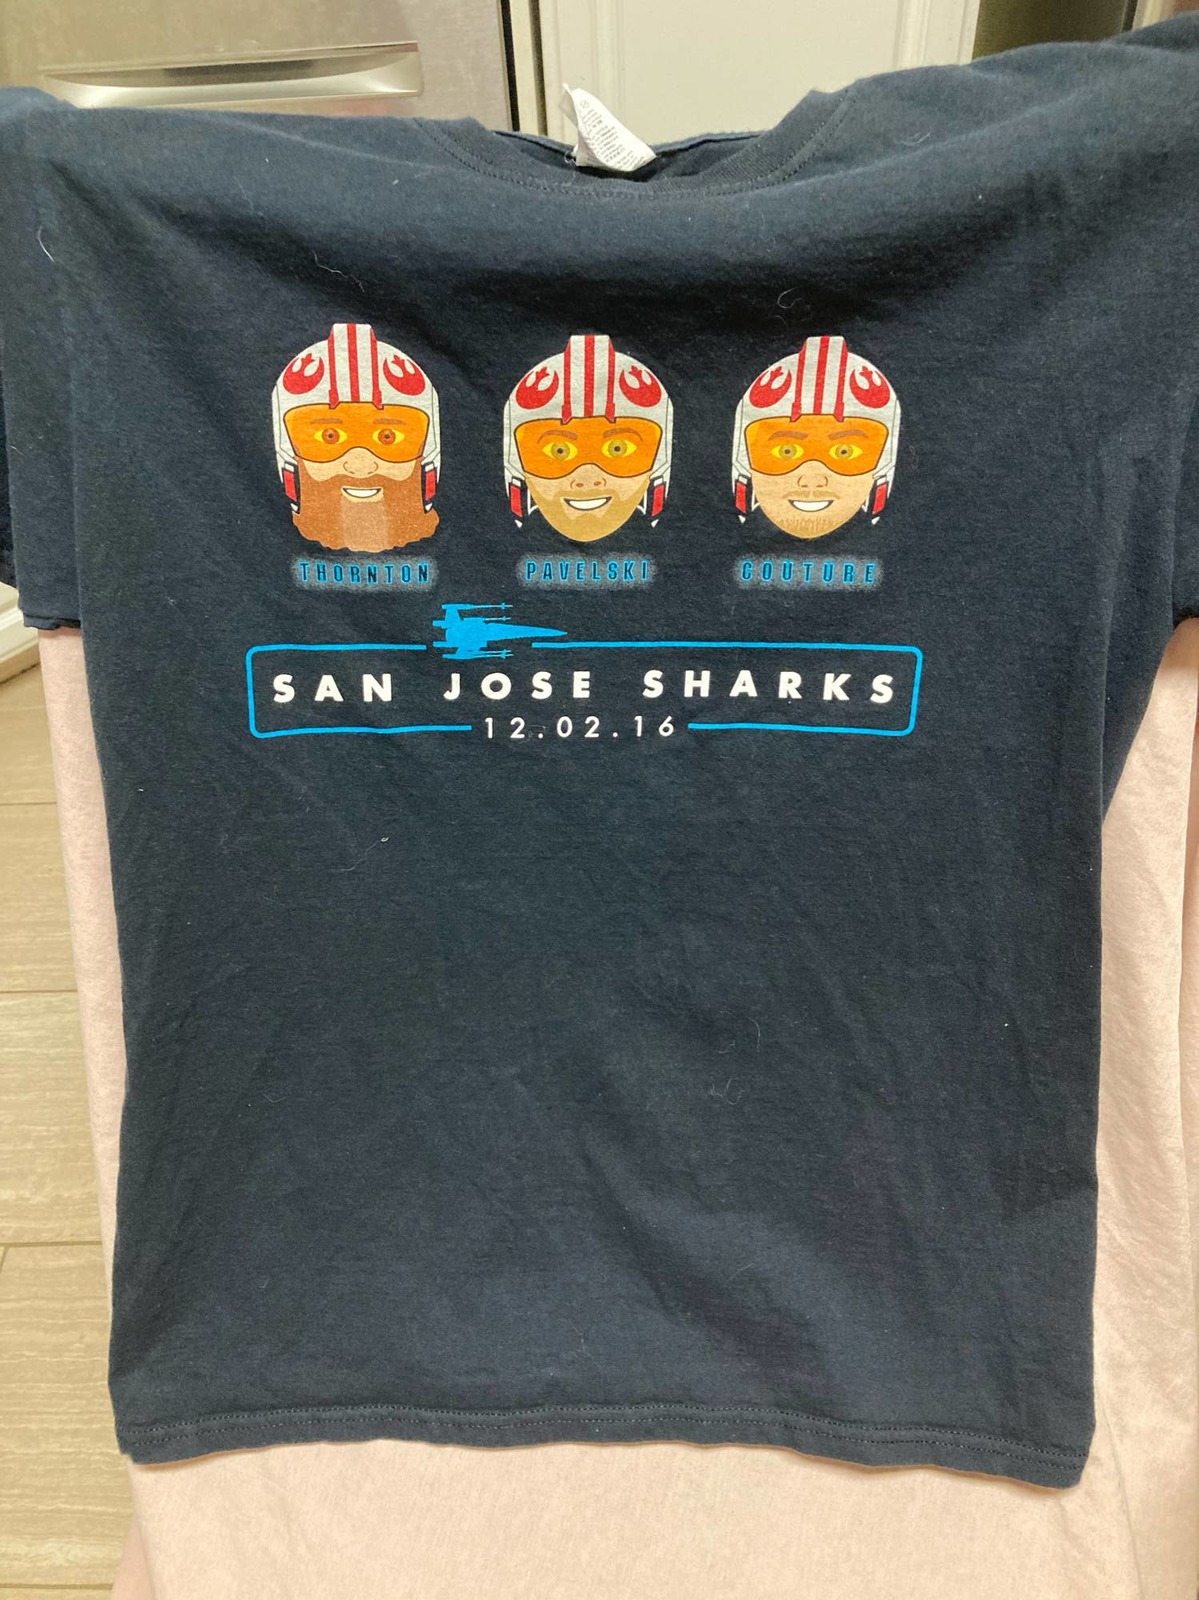 Hard To Find San Jose Sharks 2016 Star Wars Promo Shirt Size M - $19.80